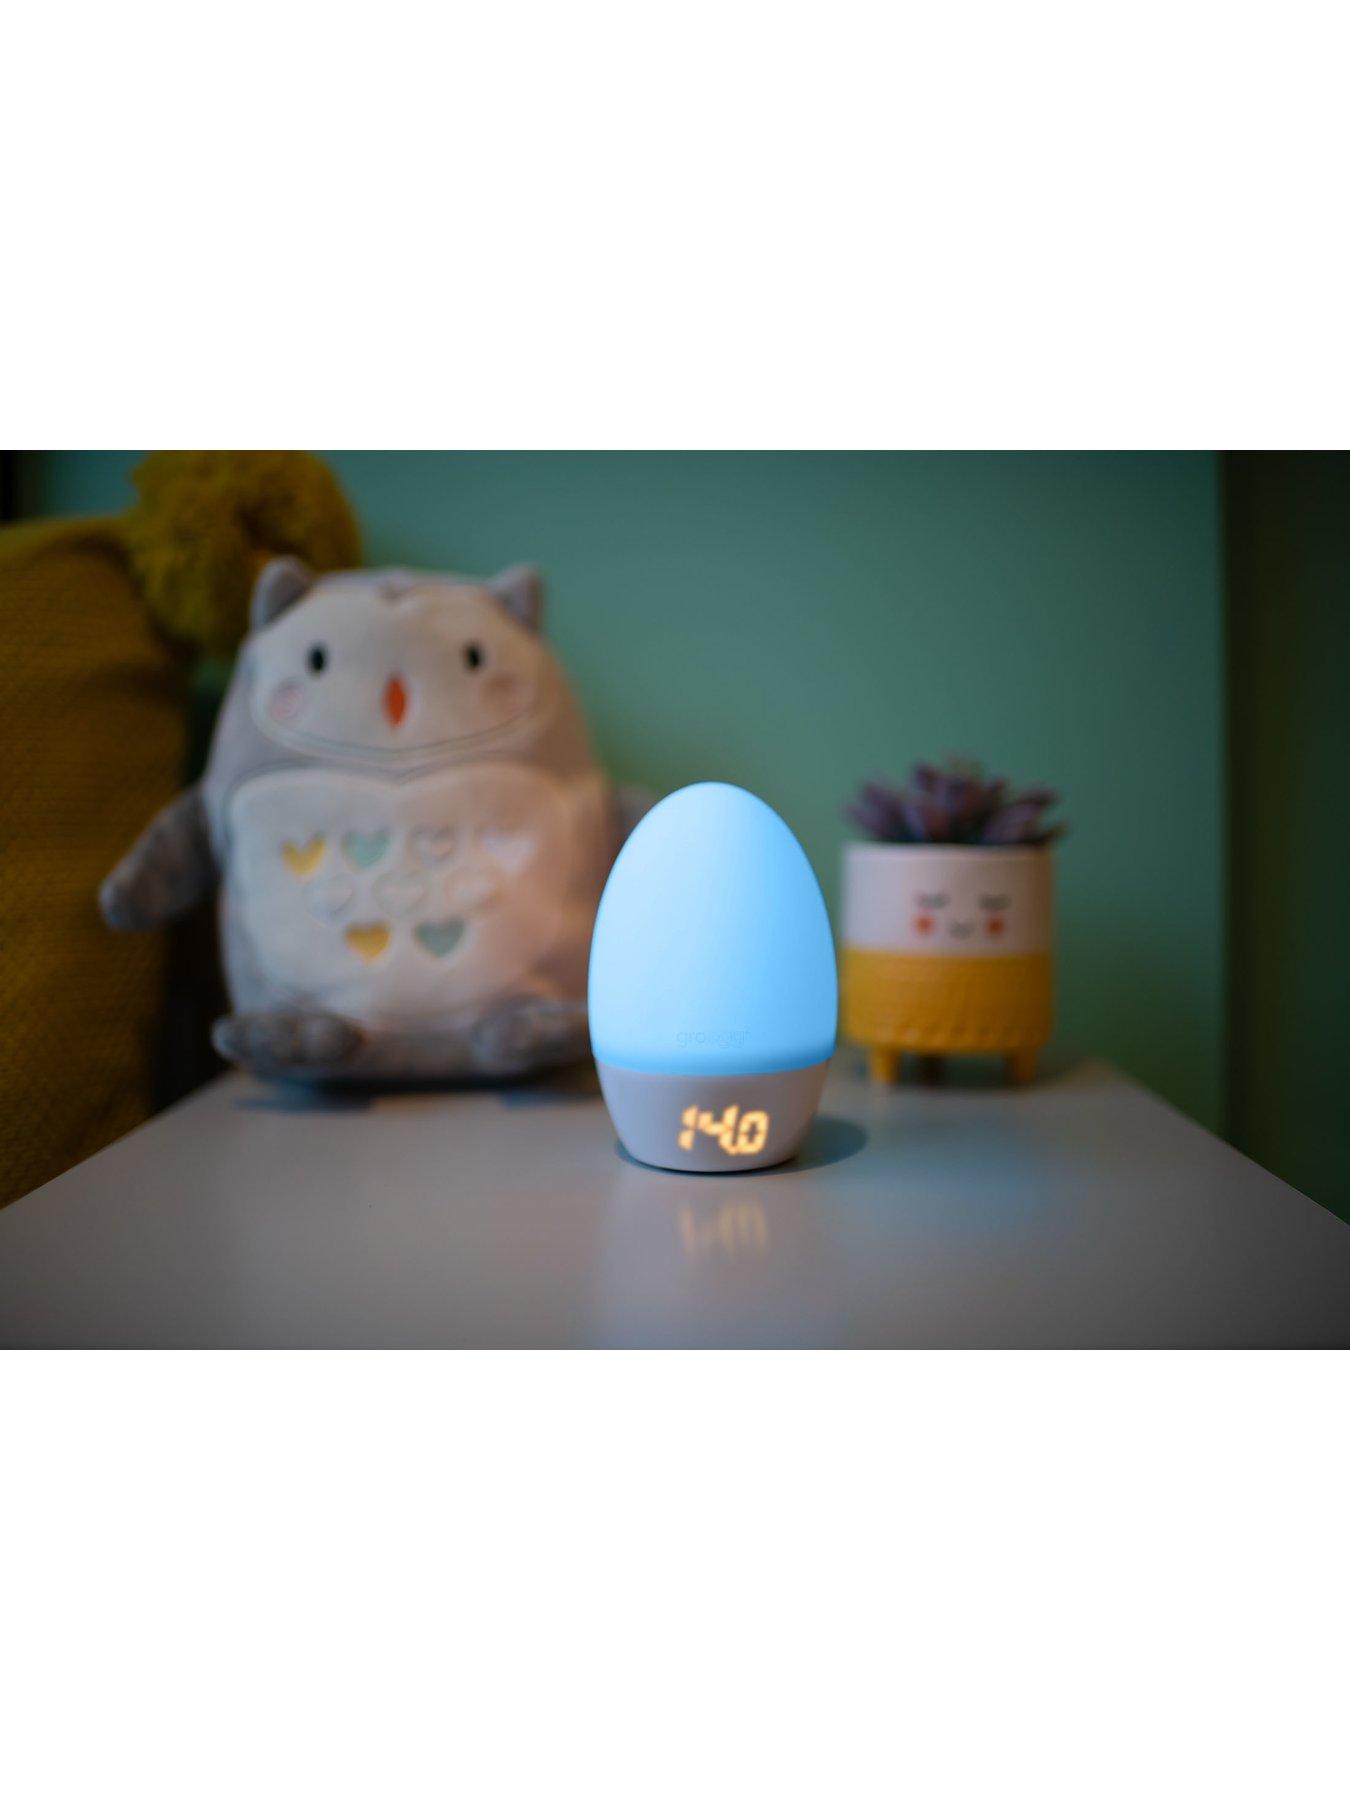 Tommee Tippee Gro Egg 2  Nursery Night Light – Mamas & Papas UK